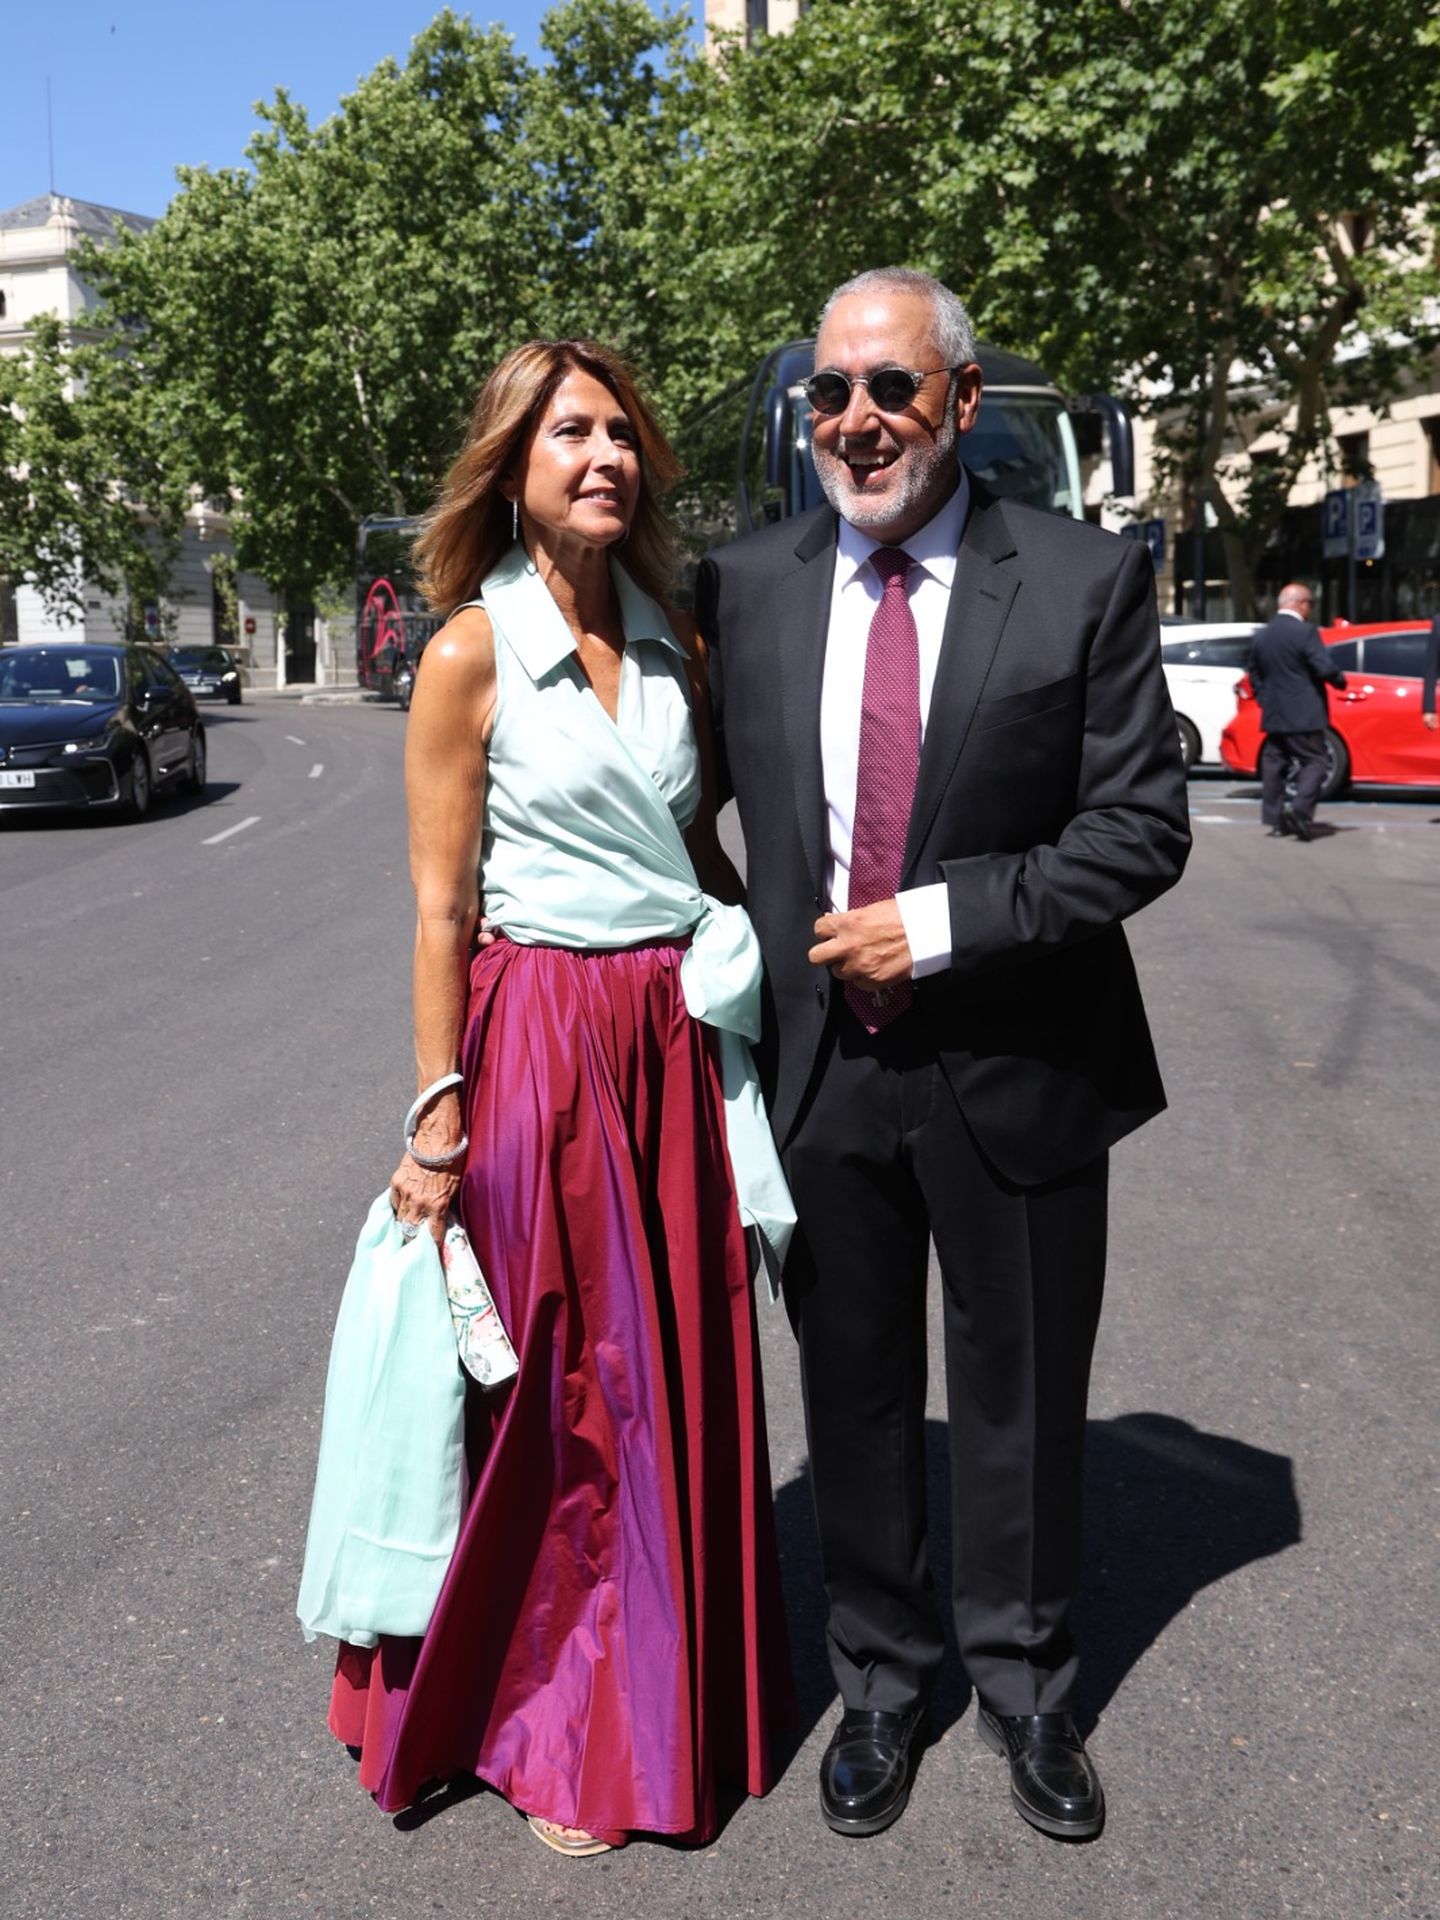 Jorge Salvador y su esposa a la salida del Ritz | Juanjo Sacristán